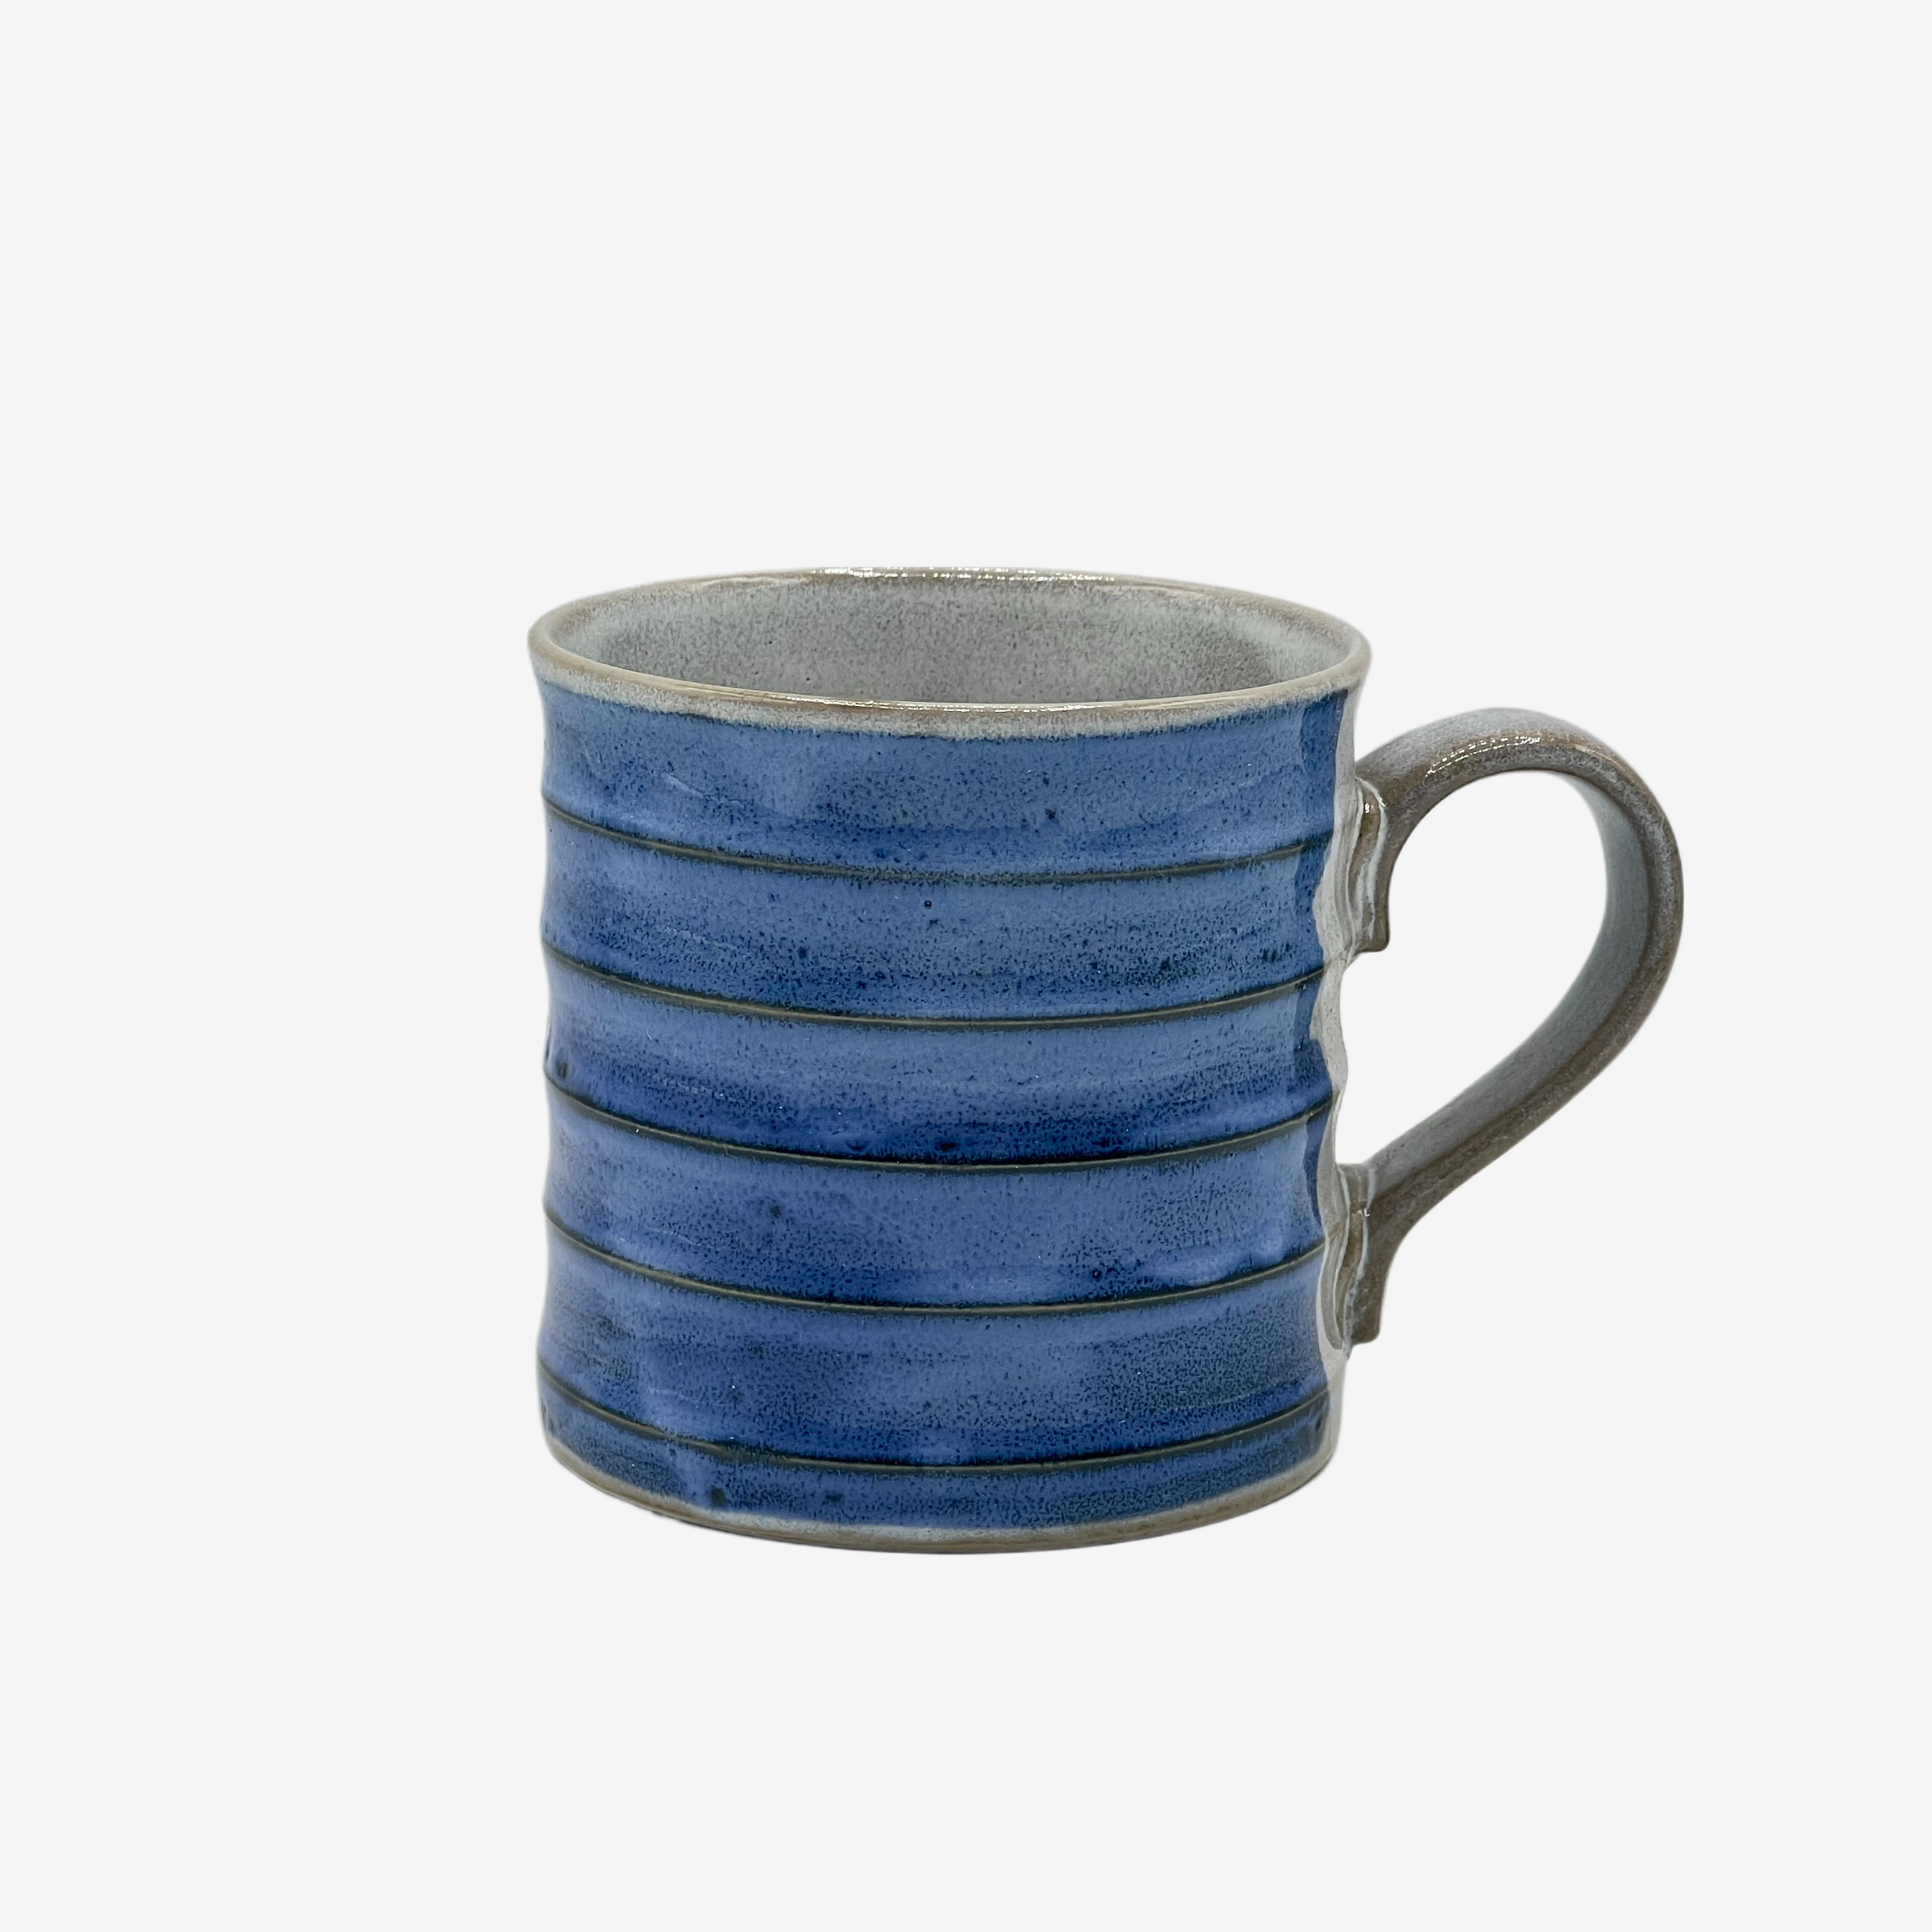 Kaiyu Gosu Blue Mug - Japanese Tea Mug